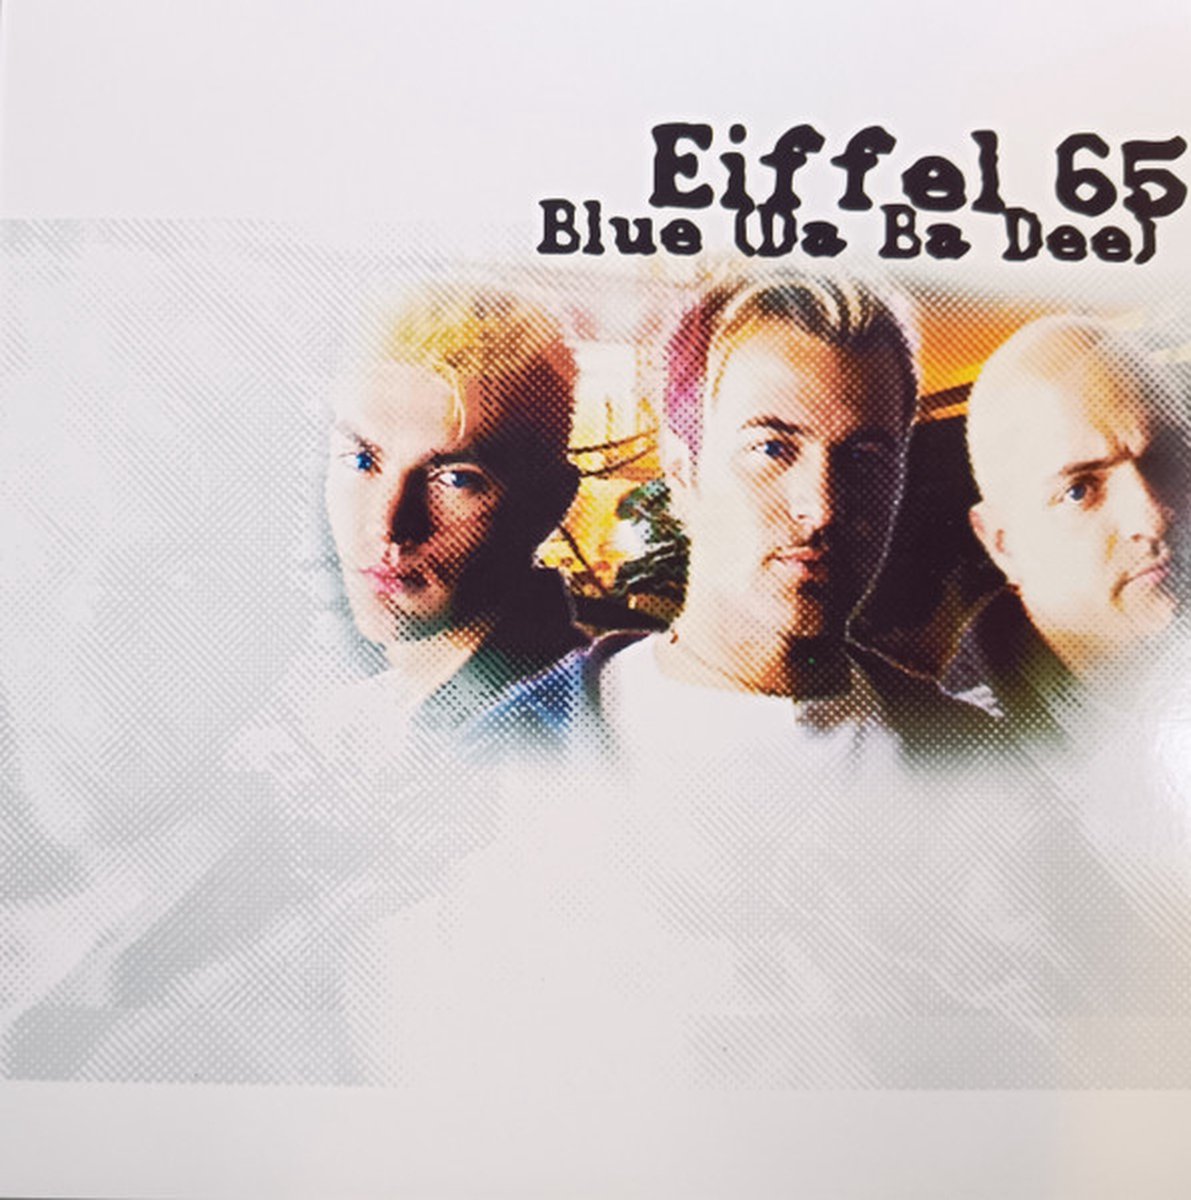 Eiffel 65 – Blue (Da Ba Dee) - 12